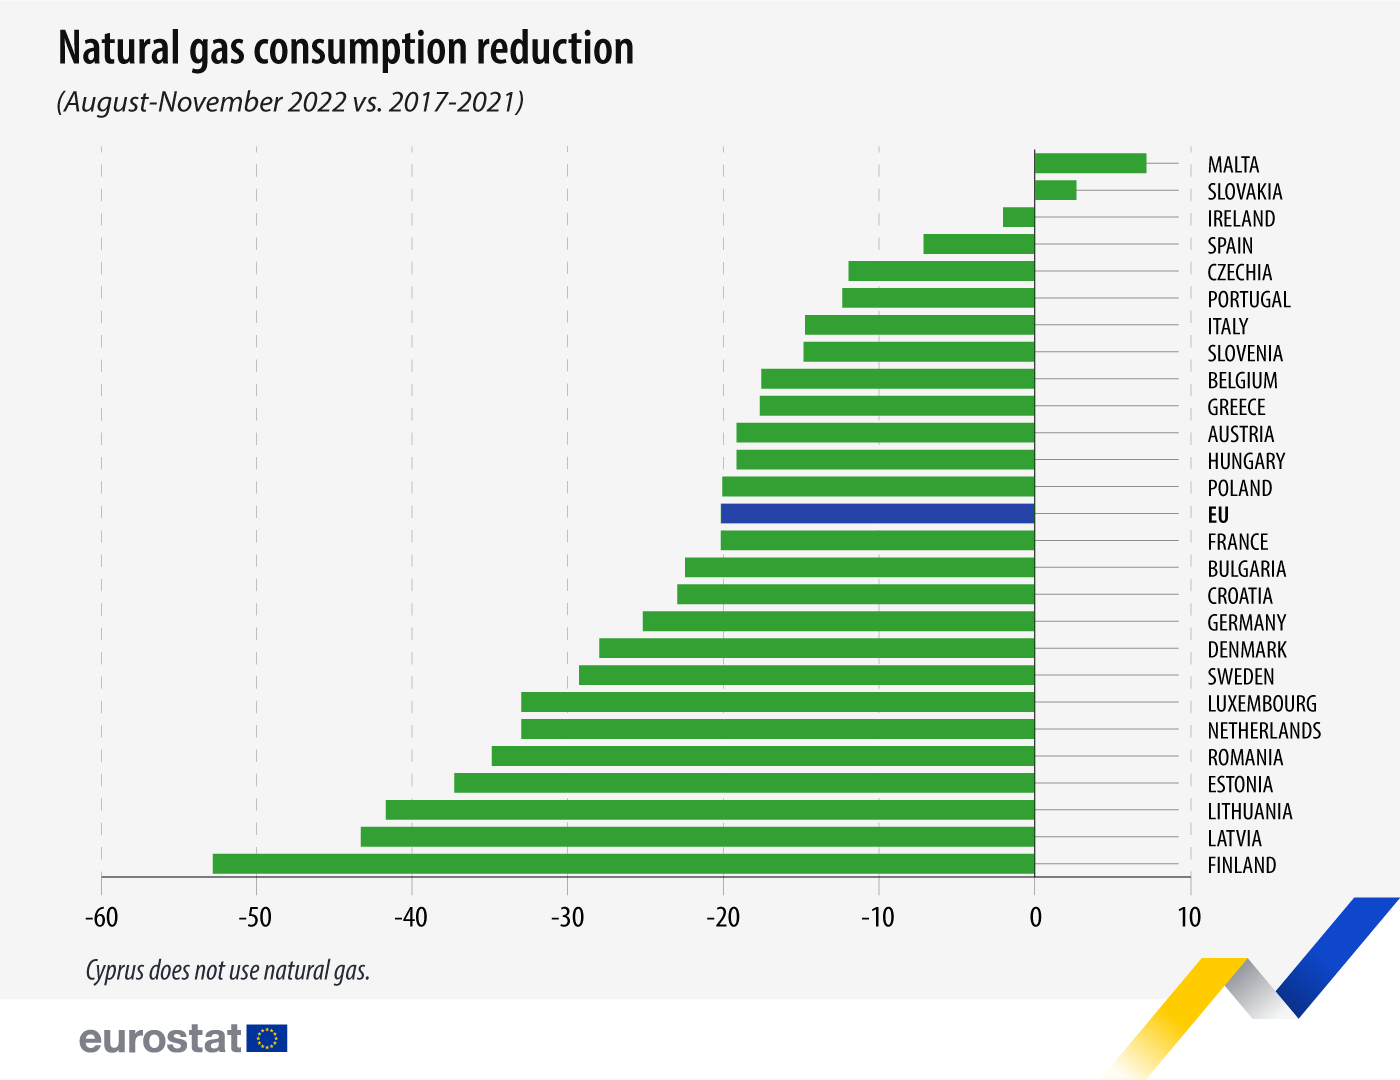 Grafico a barre: riduzione dei consumi di gas naturale, agosto-novembre 2022 vs. 2017-2021